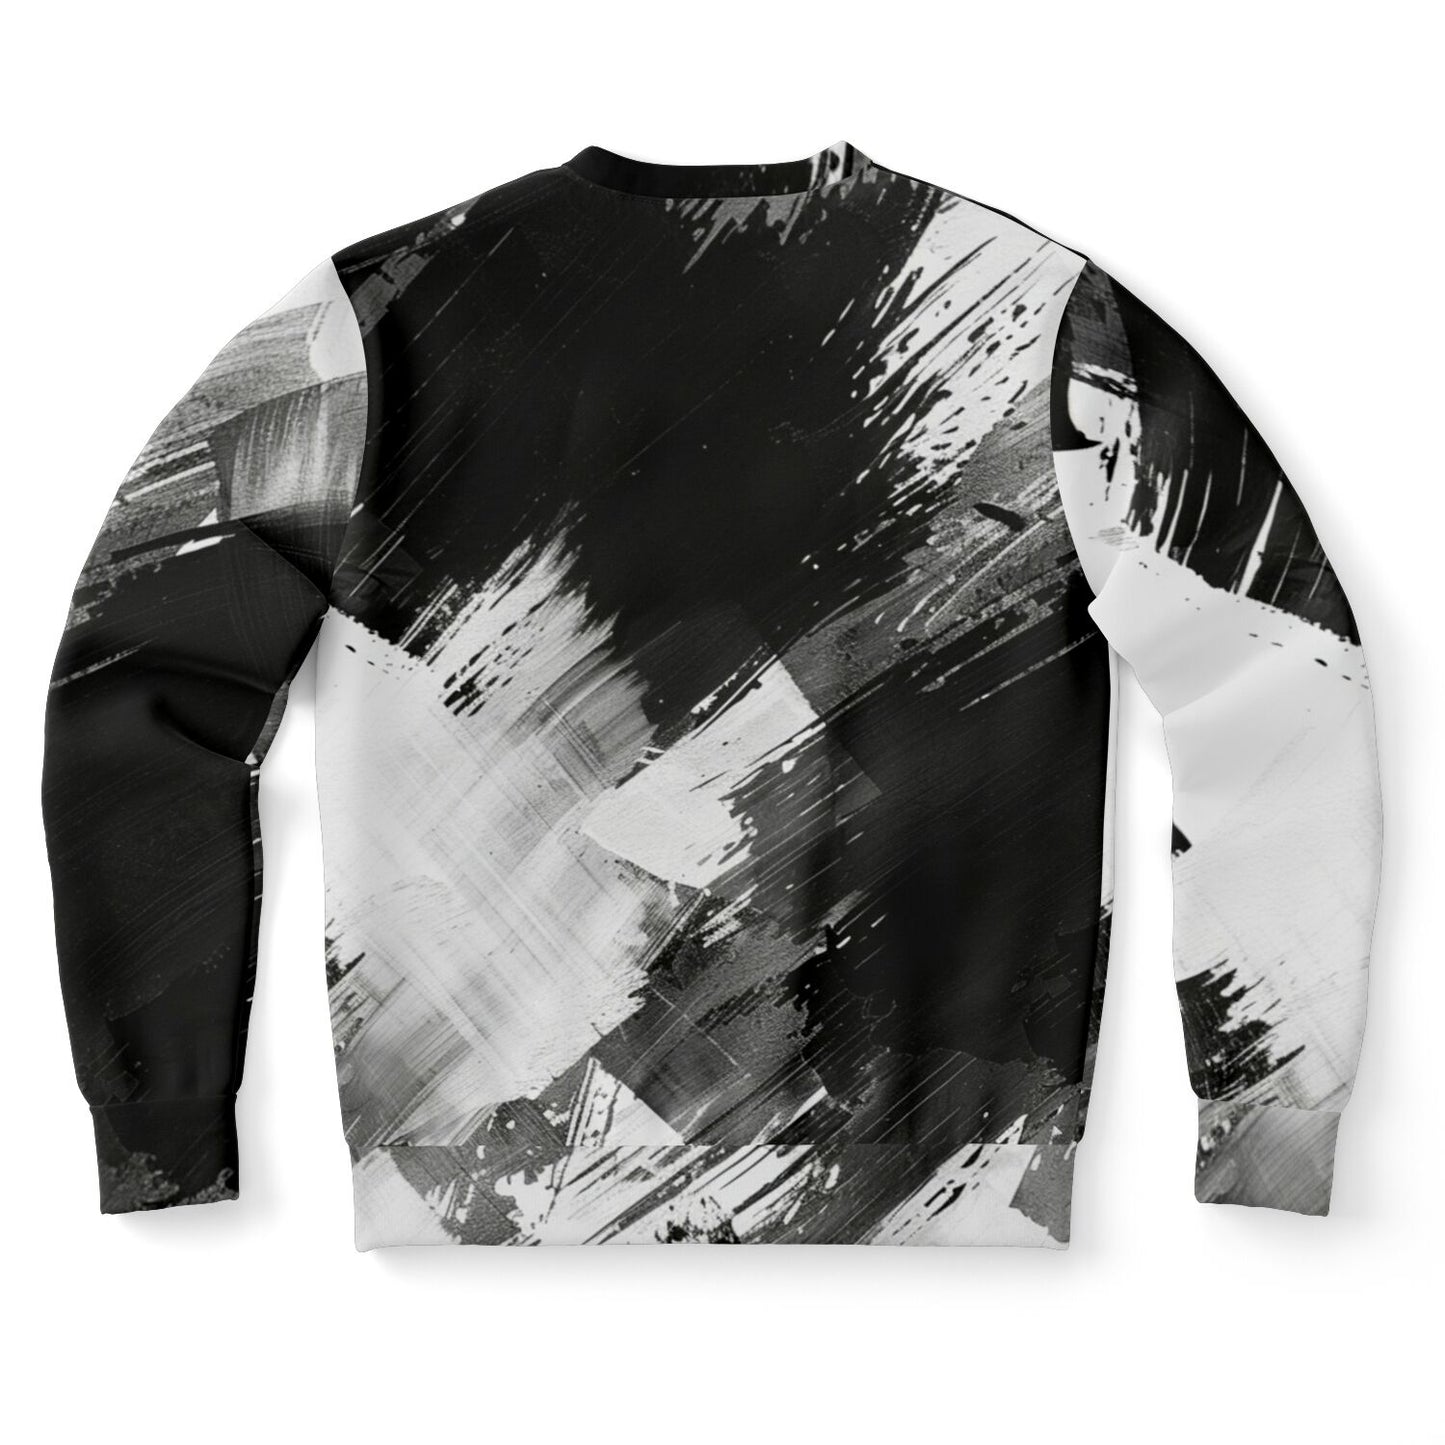 Black White Sweatshirt, Brush Ombre Gradient Crewneck Fleece Cotton Sweater Jumper Pullover Men Women Aesthetic Designer Top